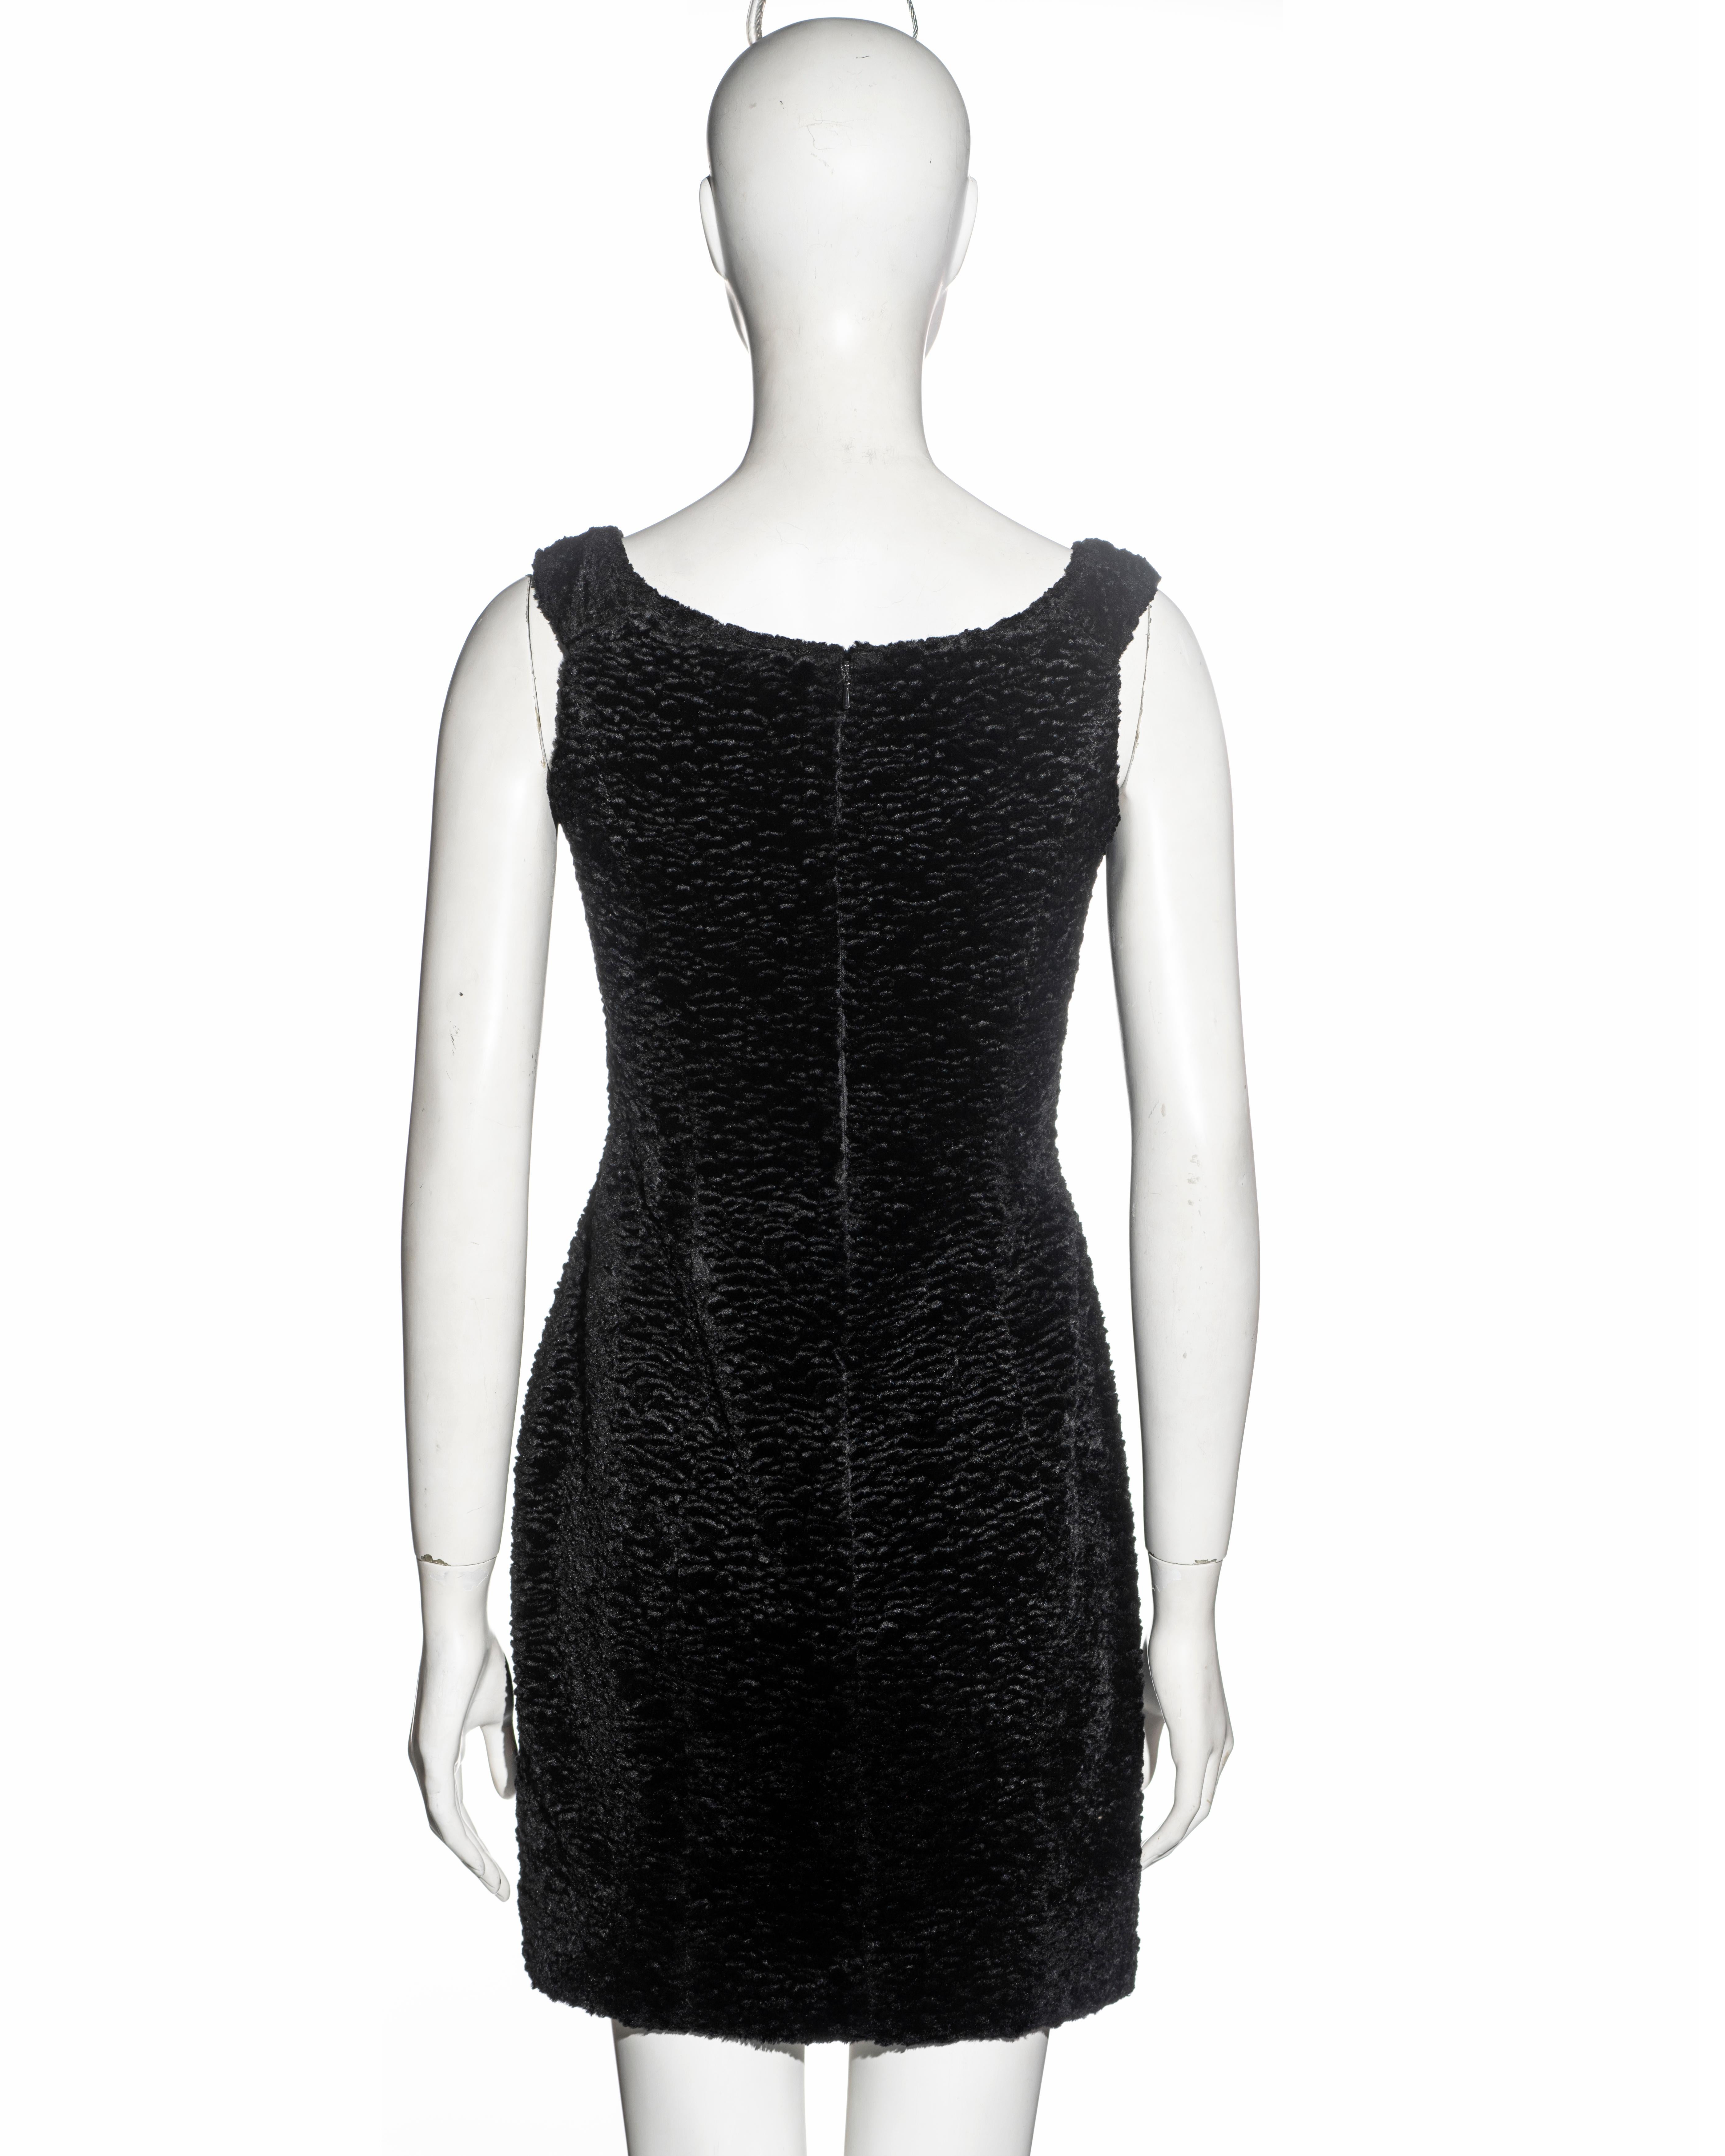 Vivienne Westwood black faux fur mini dress with built in corset, fw 1994 For Sale 4